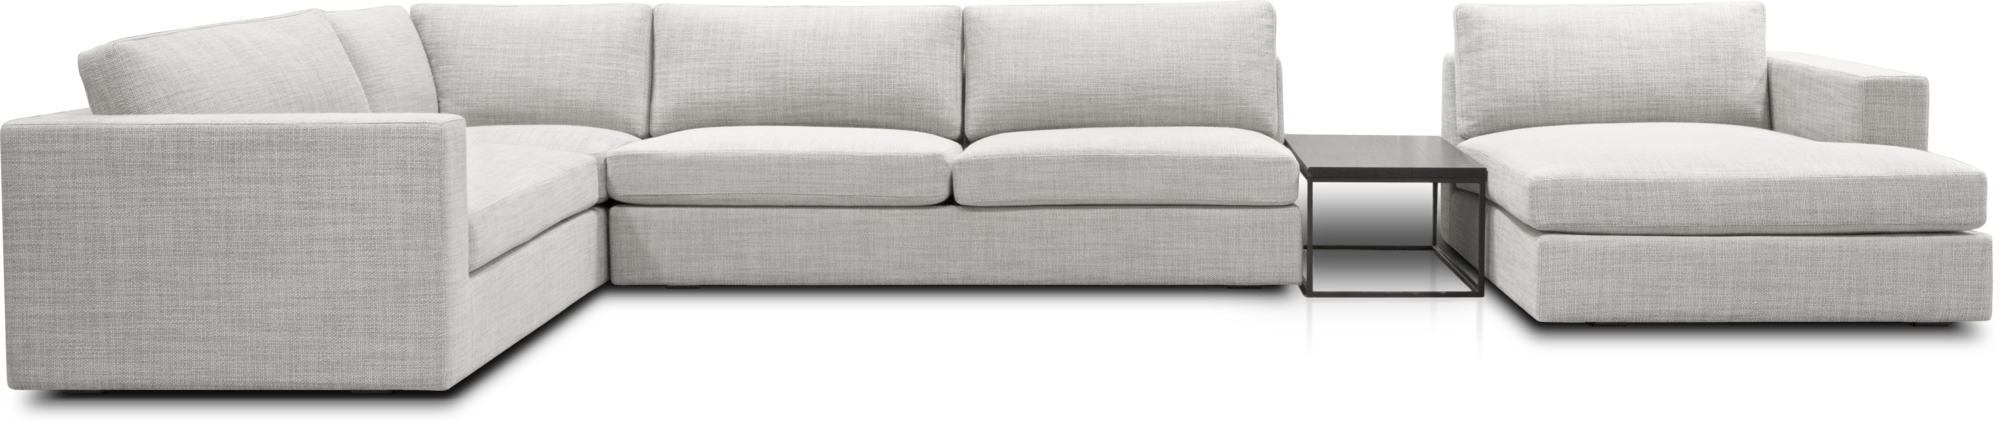 Maddox modular sofa